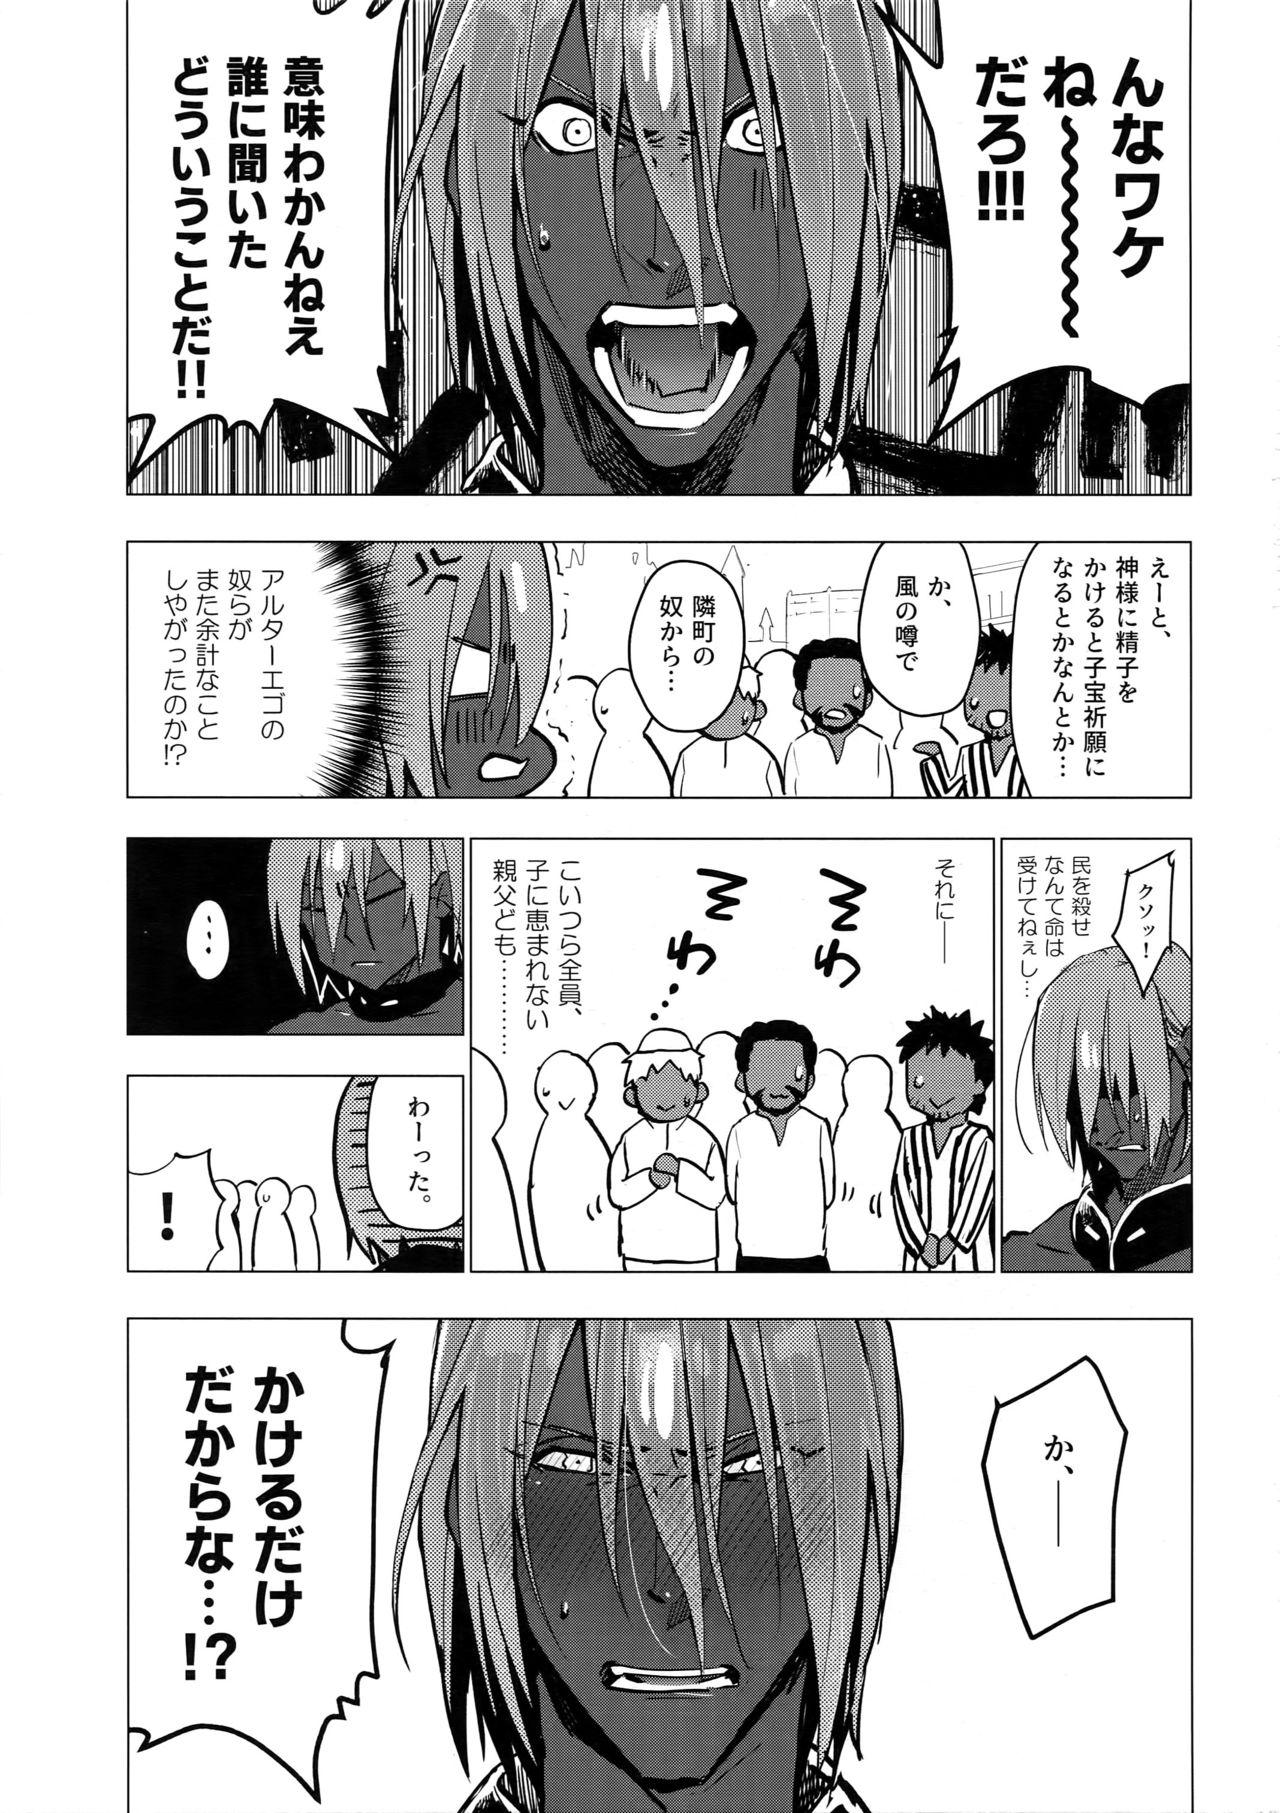 Chacal Kami-sama ni Bukkakeruto Kodakusan tte Honto desu ka! - Fate grand order Boquete - Page 2